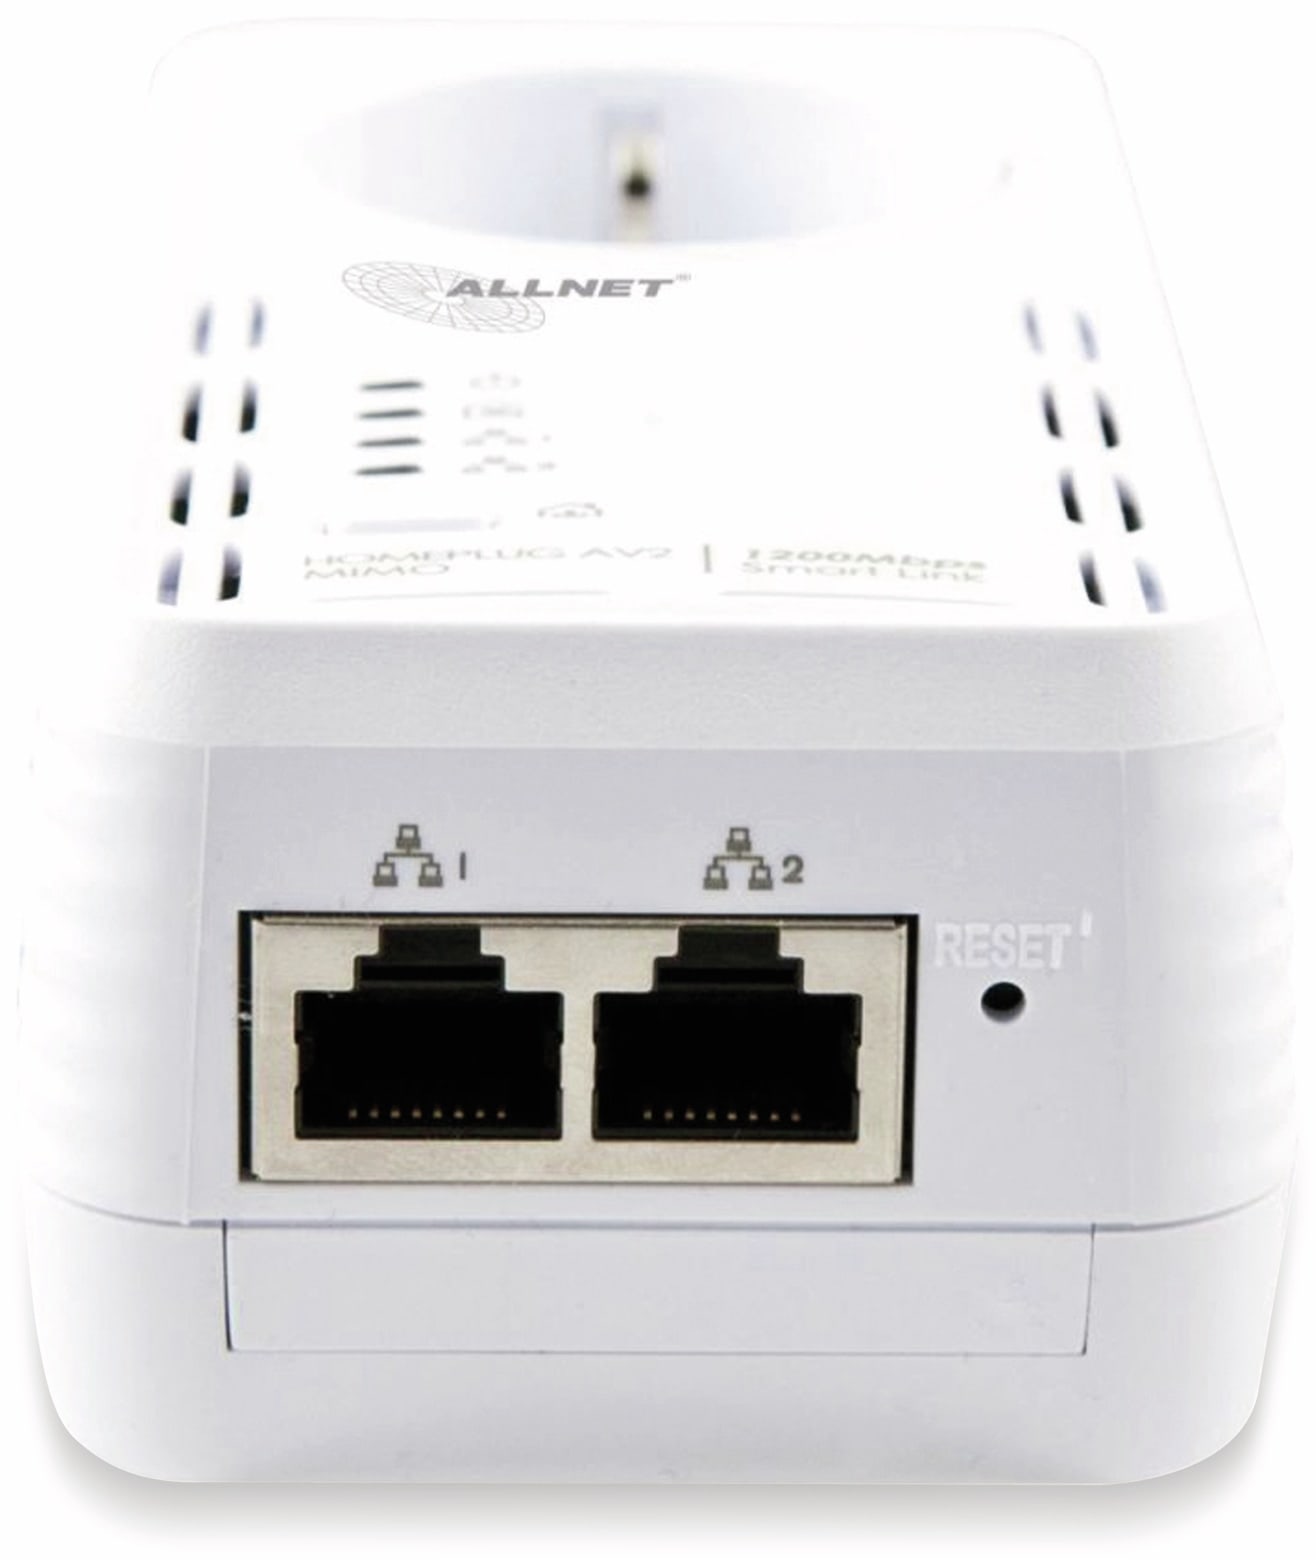 ALLNET Powerline-Adapter ALL1681205, 1200 MBit/s, SmartLink